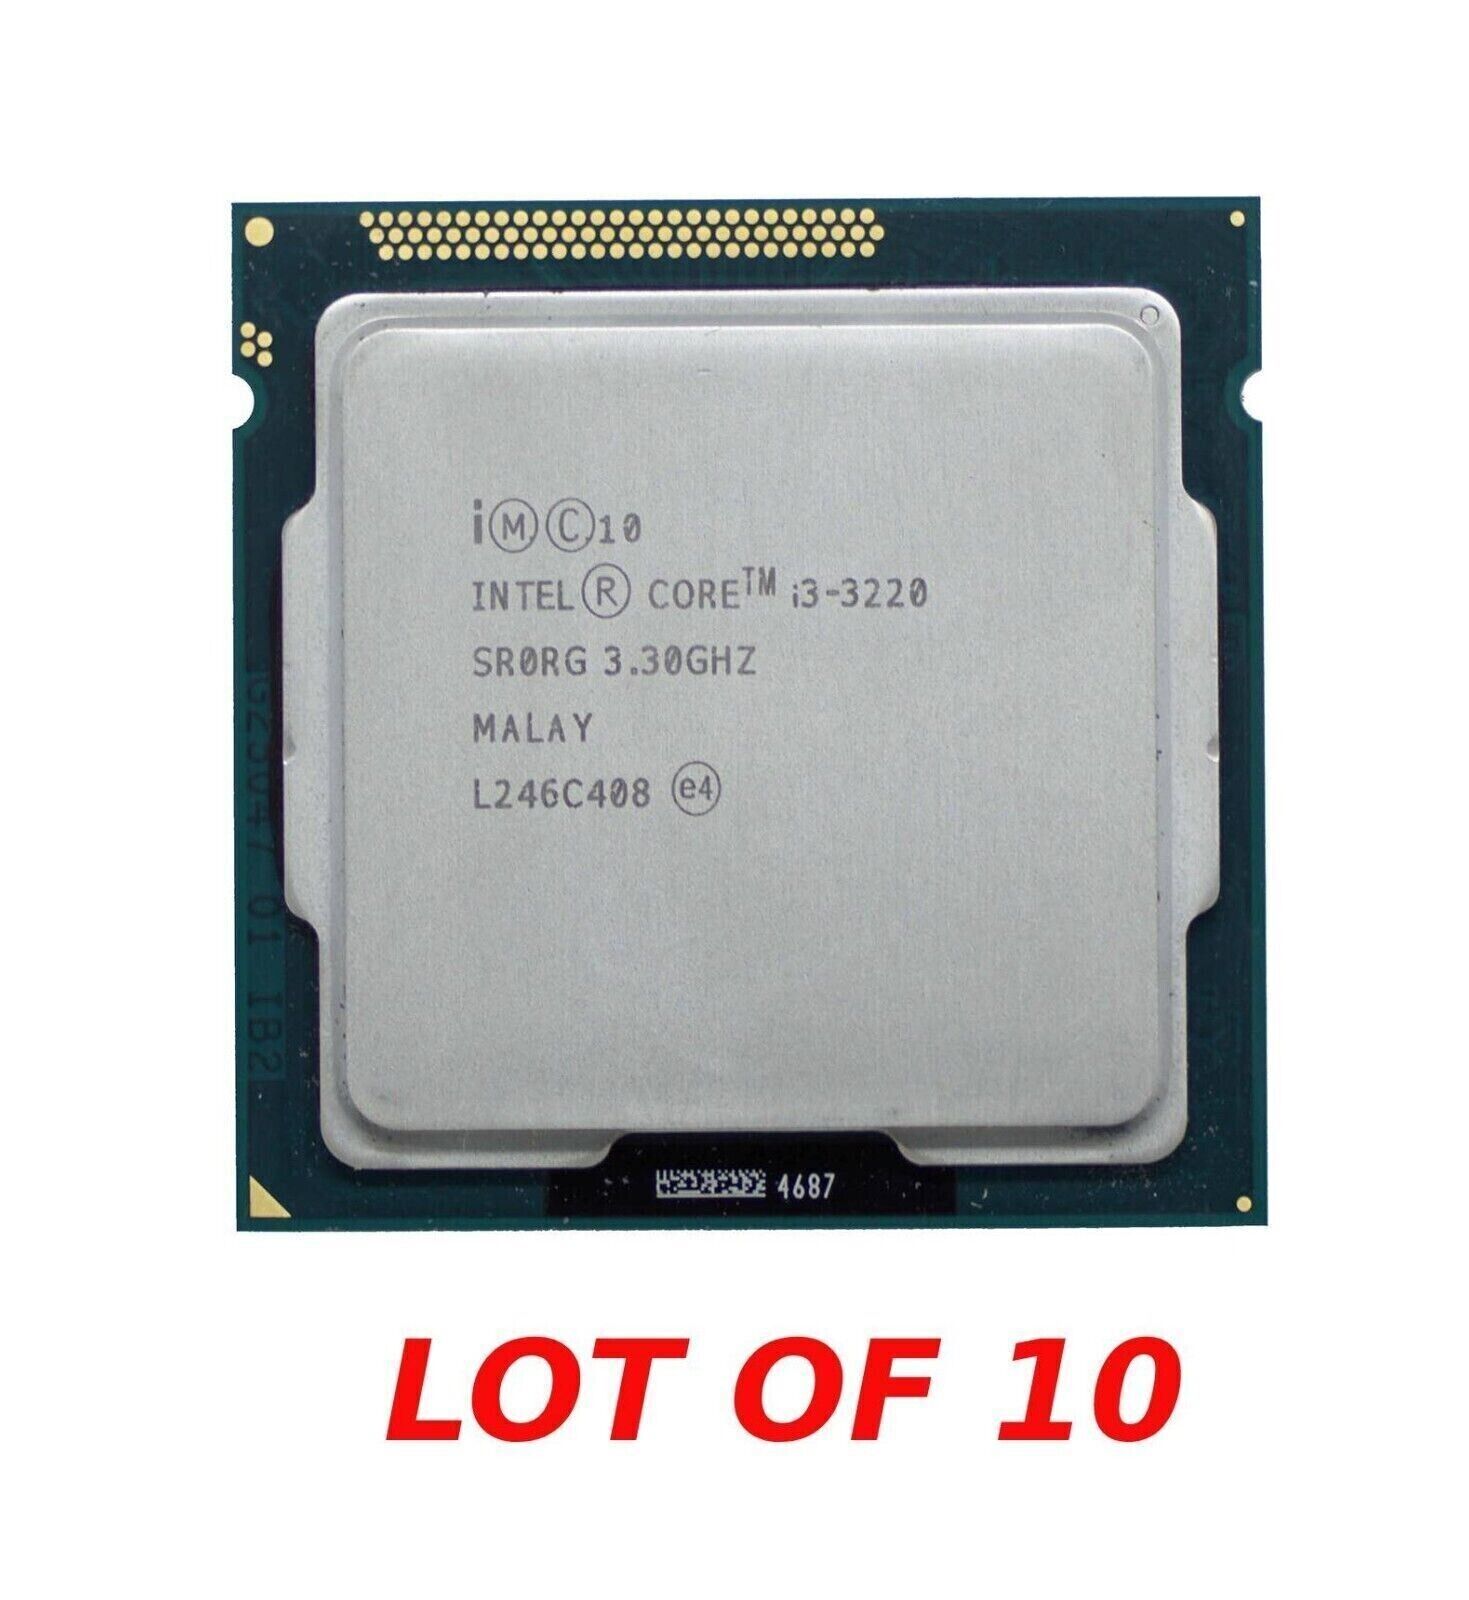 Lot of 10 Intel Core i3-3220 3.3GHz 5GT/s SR0RG LGA 1155 CPU Processor